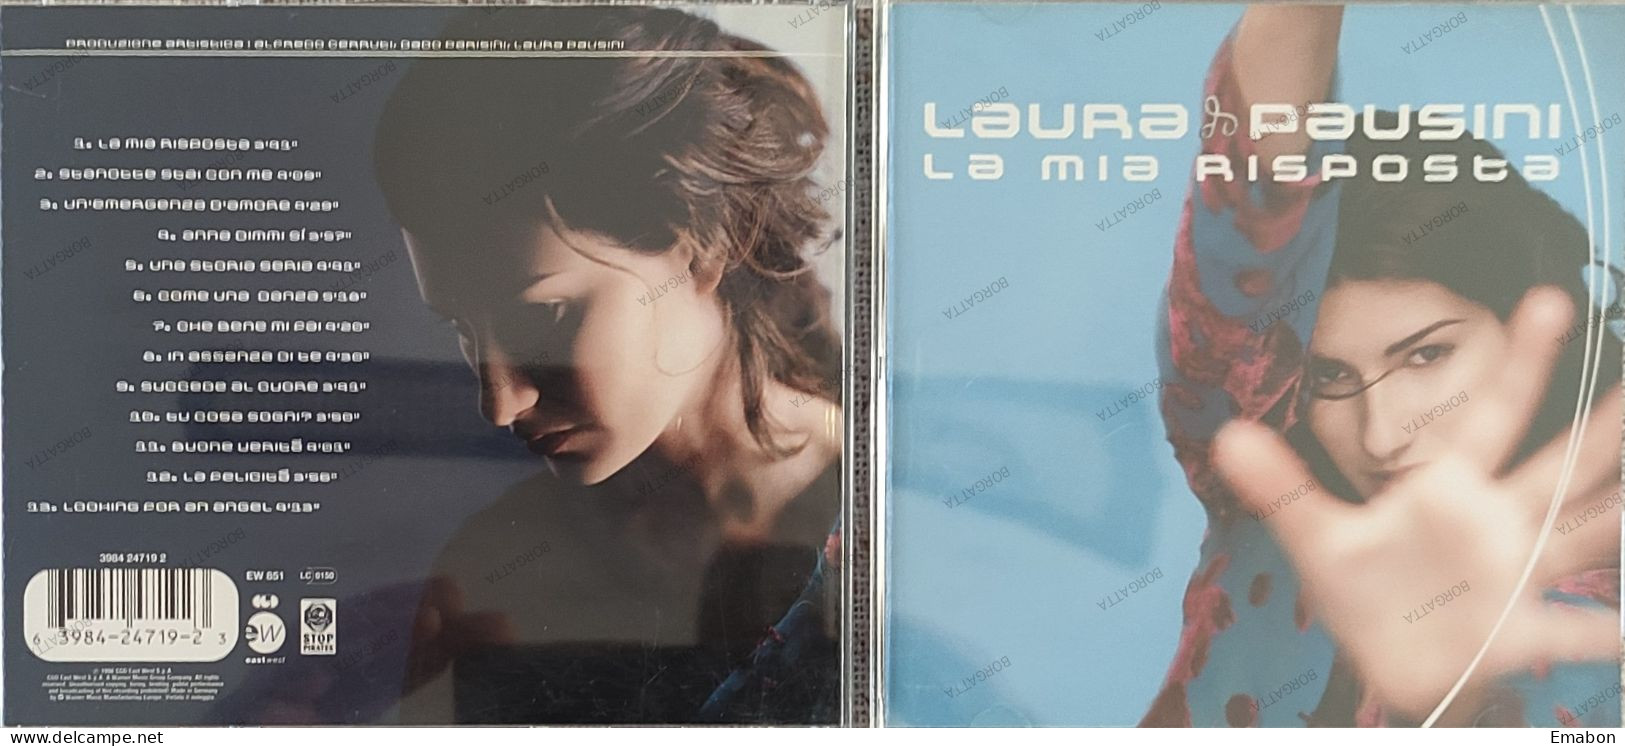 BORGATTA - ITALIANA  - Cd LAURA PAUSINI - LA MIA RISPOSTA  - CGD EAST 1998 -  USATO In Buono Stato - Otros - Canción Italiana